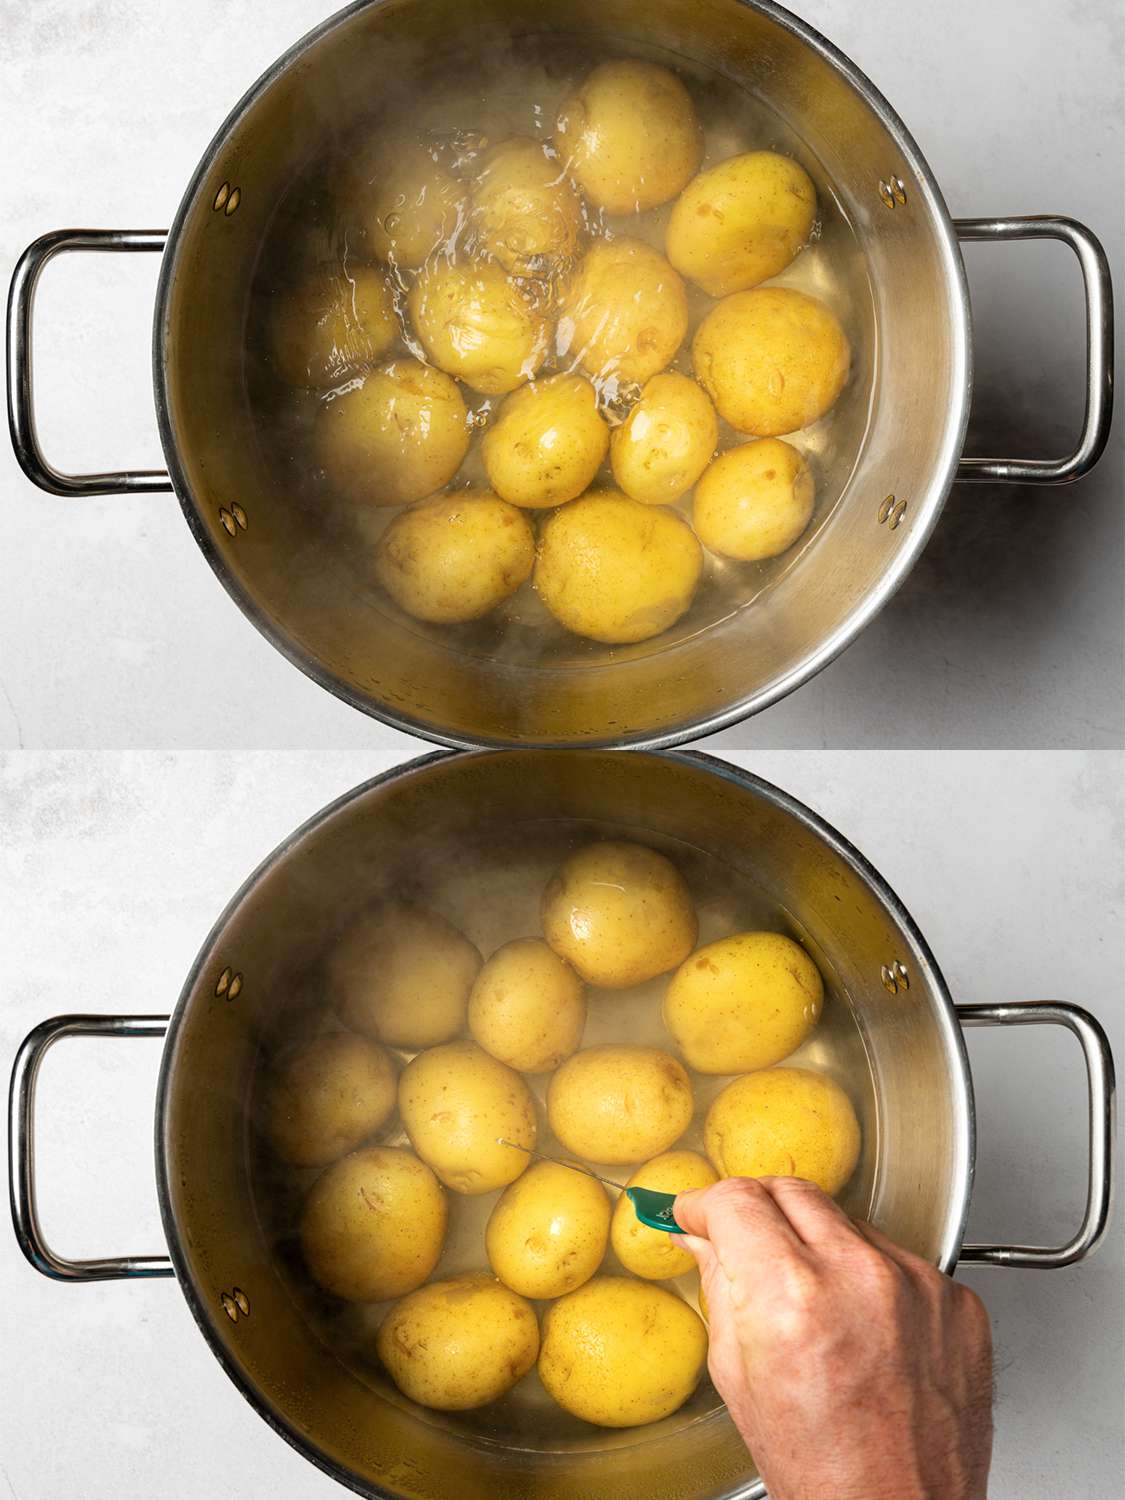 两幅图像的拼贴画。上图是一锅沸水里的育空黄金小土豆。下图显示的是已经煮熟的土豆，用手拿着金属蛋糕测试器测试土豆的熟度。